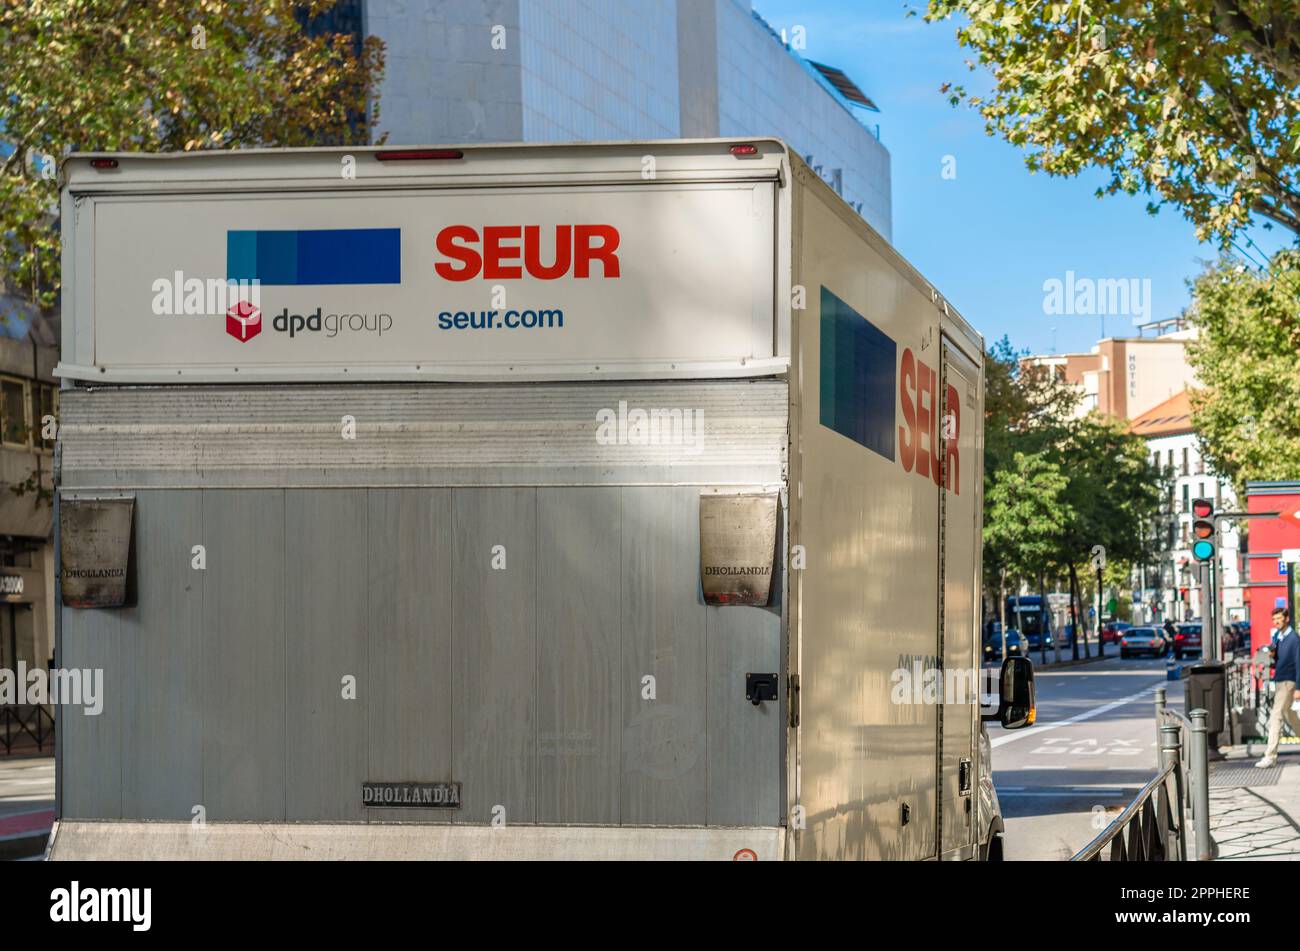 MADRID, SPANIEN â€“ 5. OKTOBER 2021: Lieferwagen des Frachttransportunternehmens SEUR (Servicio EspaÃ±ol Urgente de Reparto, spanisch für: Spanischer Urgent Delivery Service), eine Tochtergesellschaft des französischen Konzerns DPDgroup Stockfoto